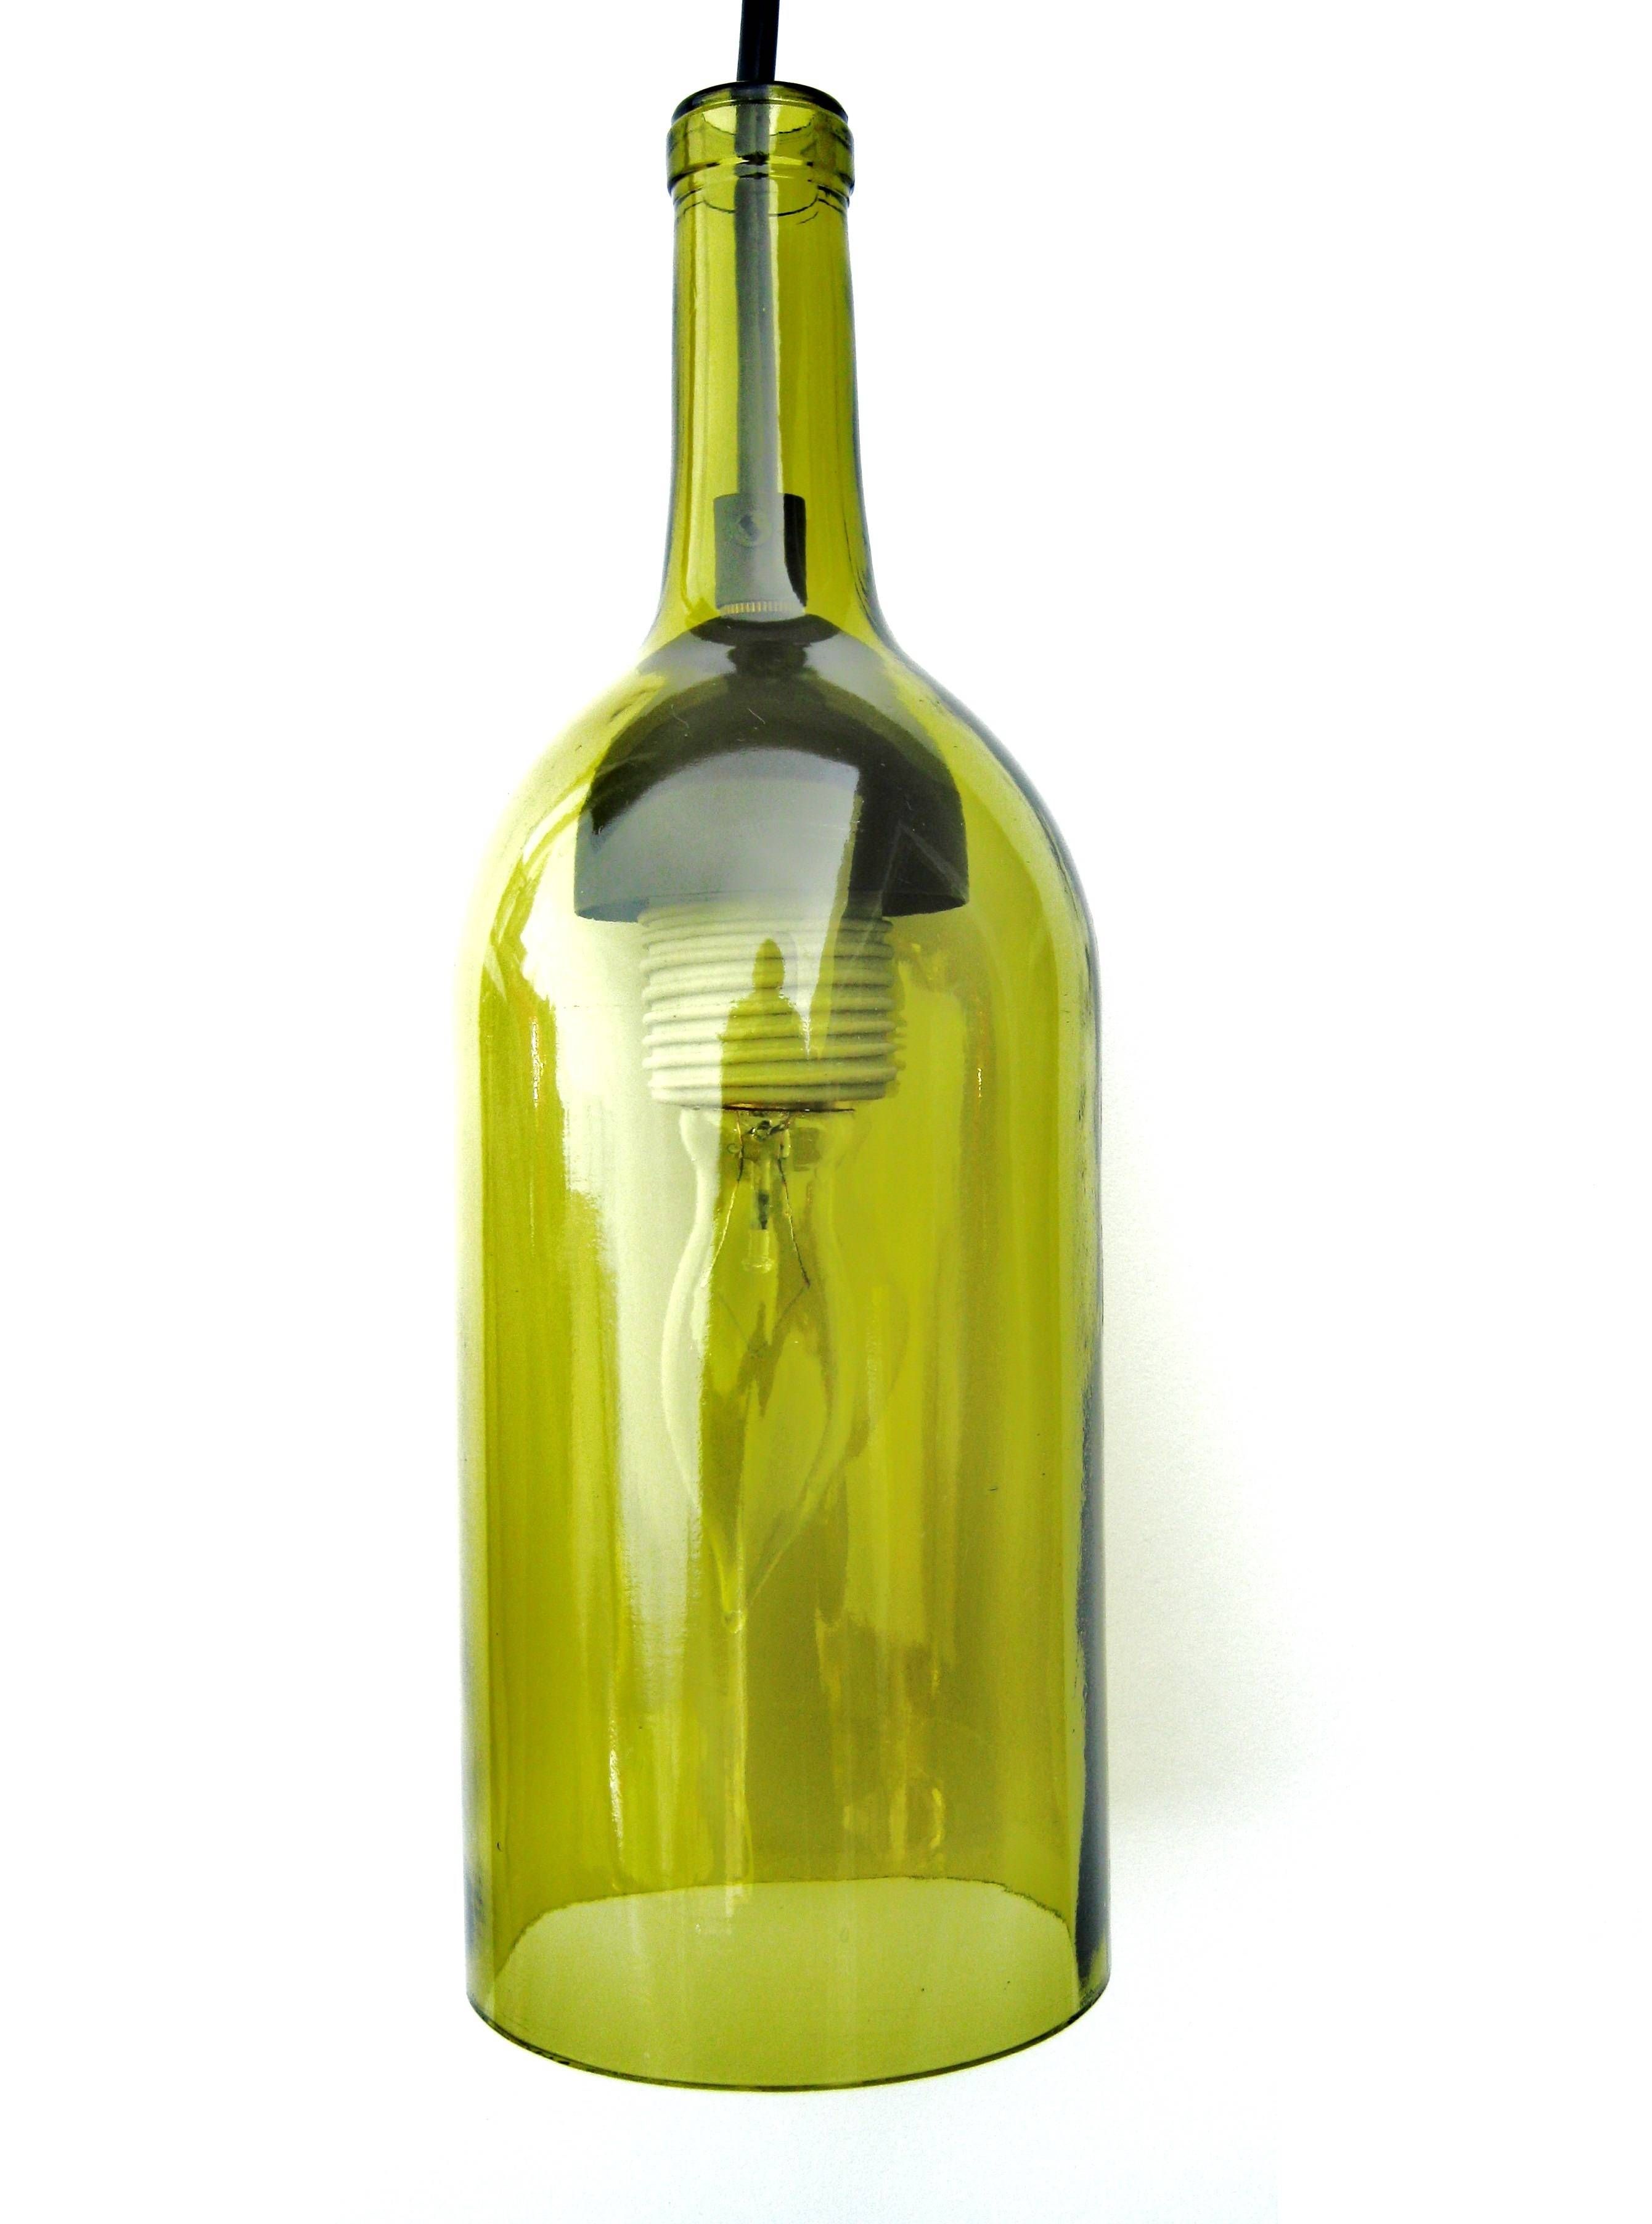 Pendant Light Kit For Wine Bottle | Roselawnlutheran Within Wine Bottle Pendant Light Kits (Photo 12 of 15)